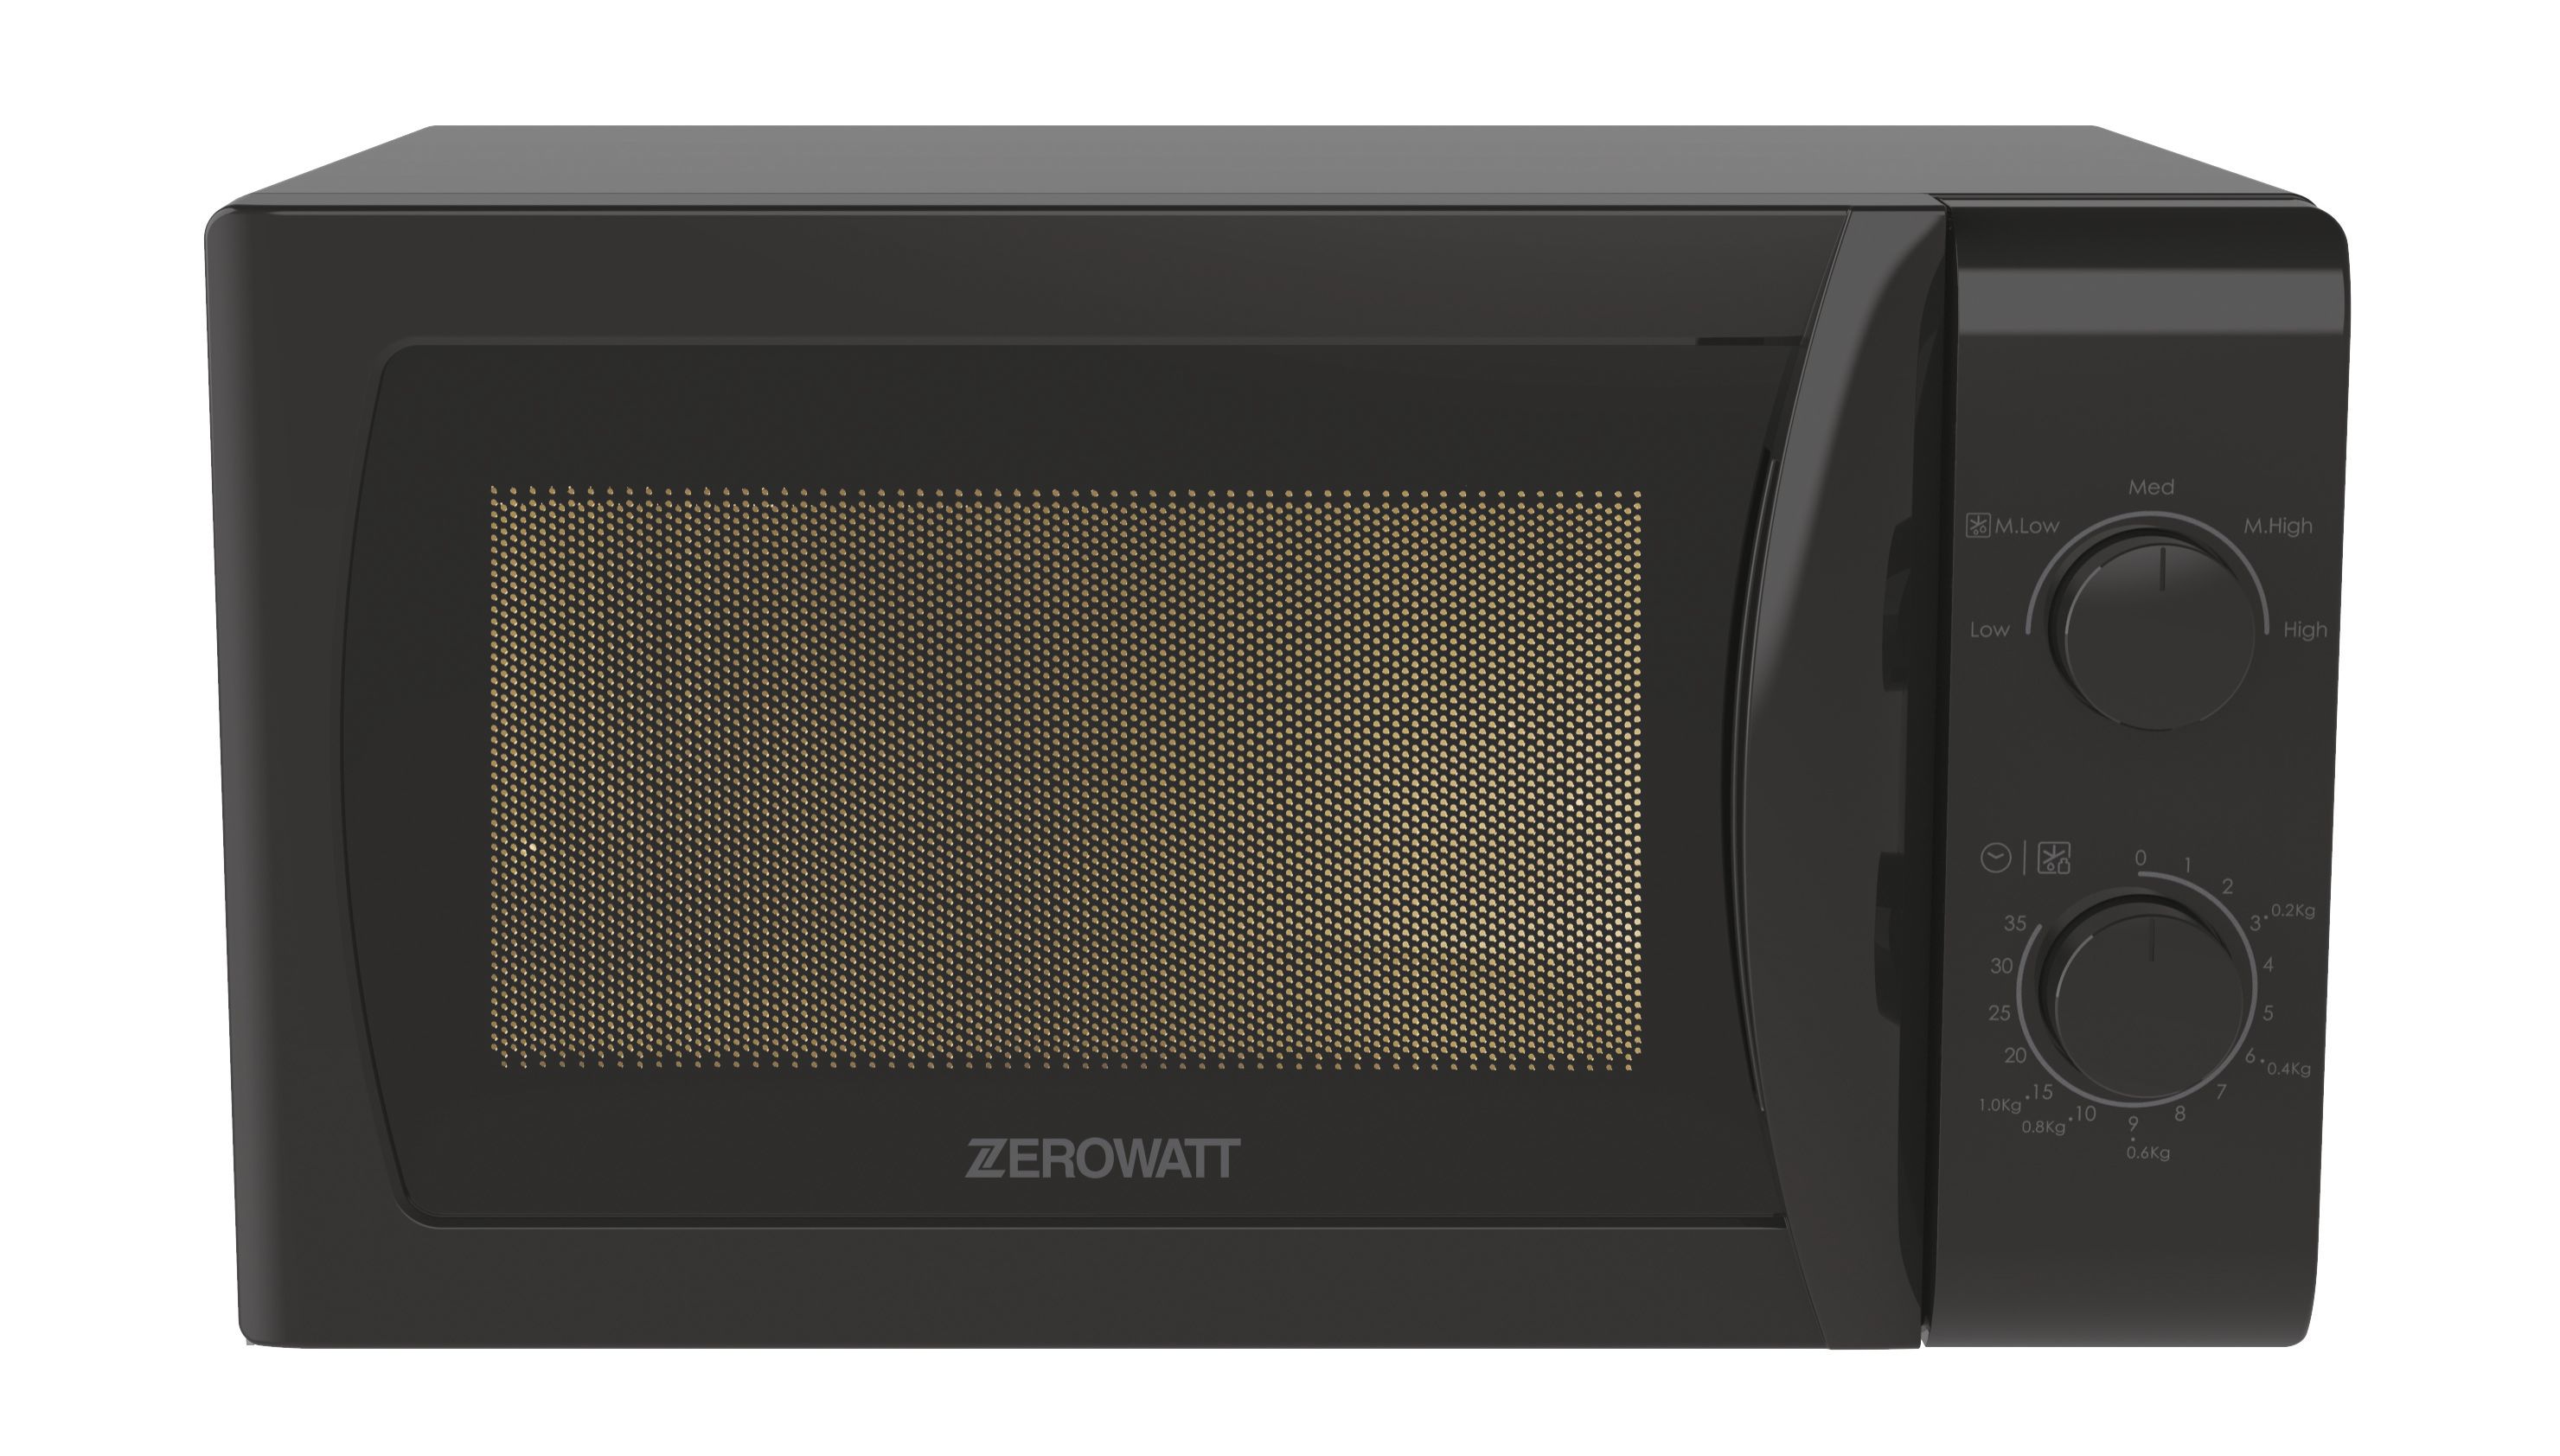 Микроволновая печь Zerowatt Zmw20smb-07, цвет черный 548076 - фото 1